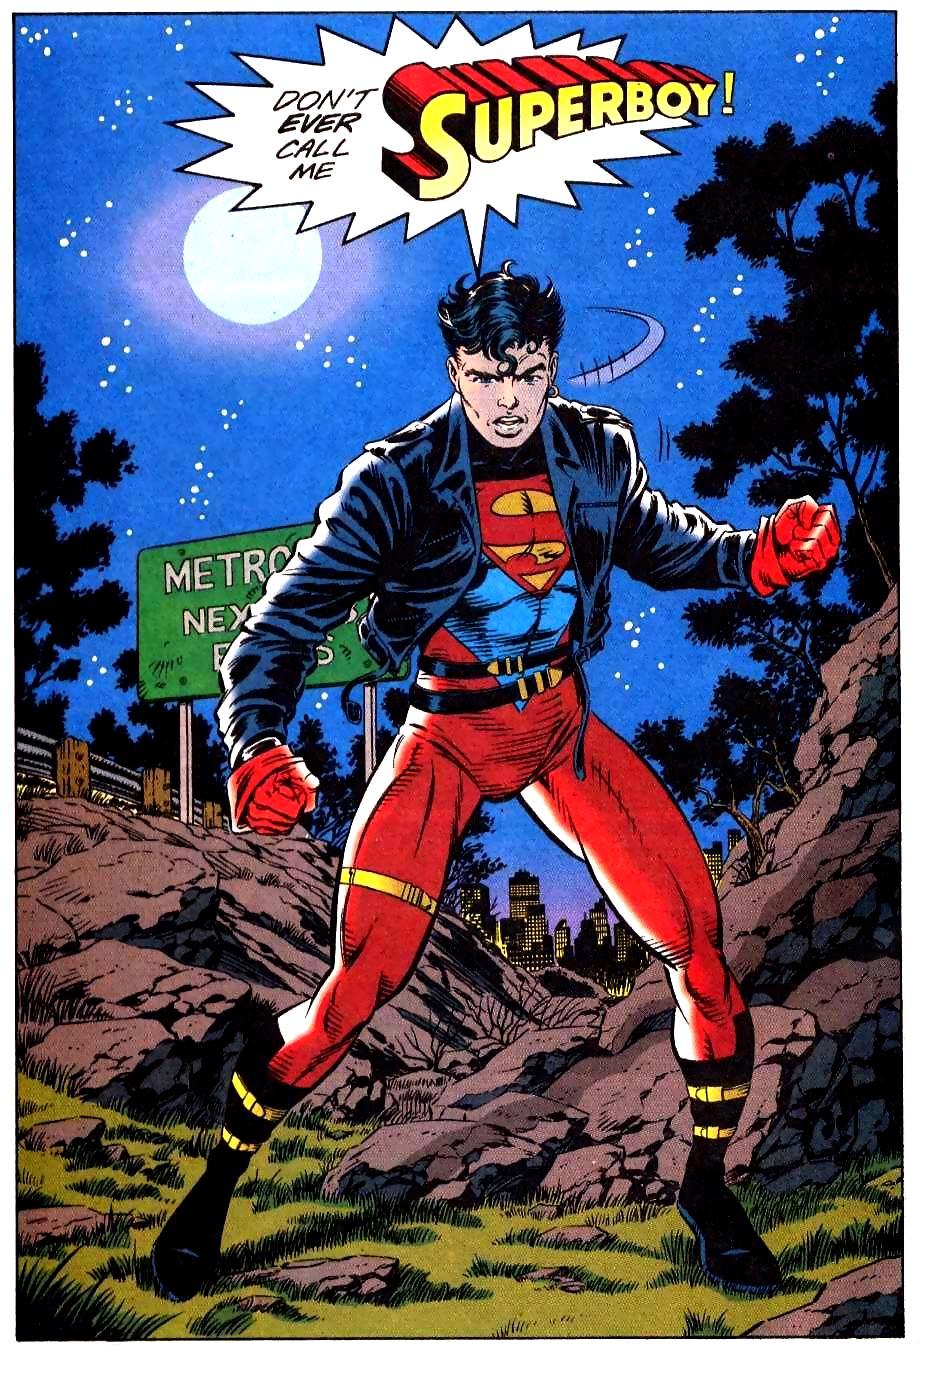 Résultat de recherche d'images pour "superboy 90's"